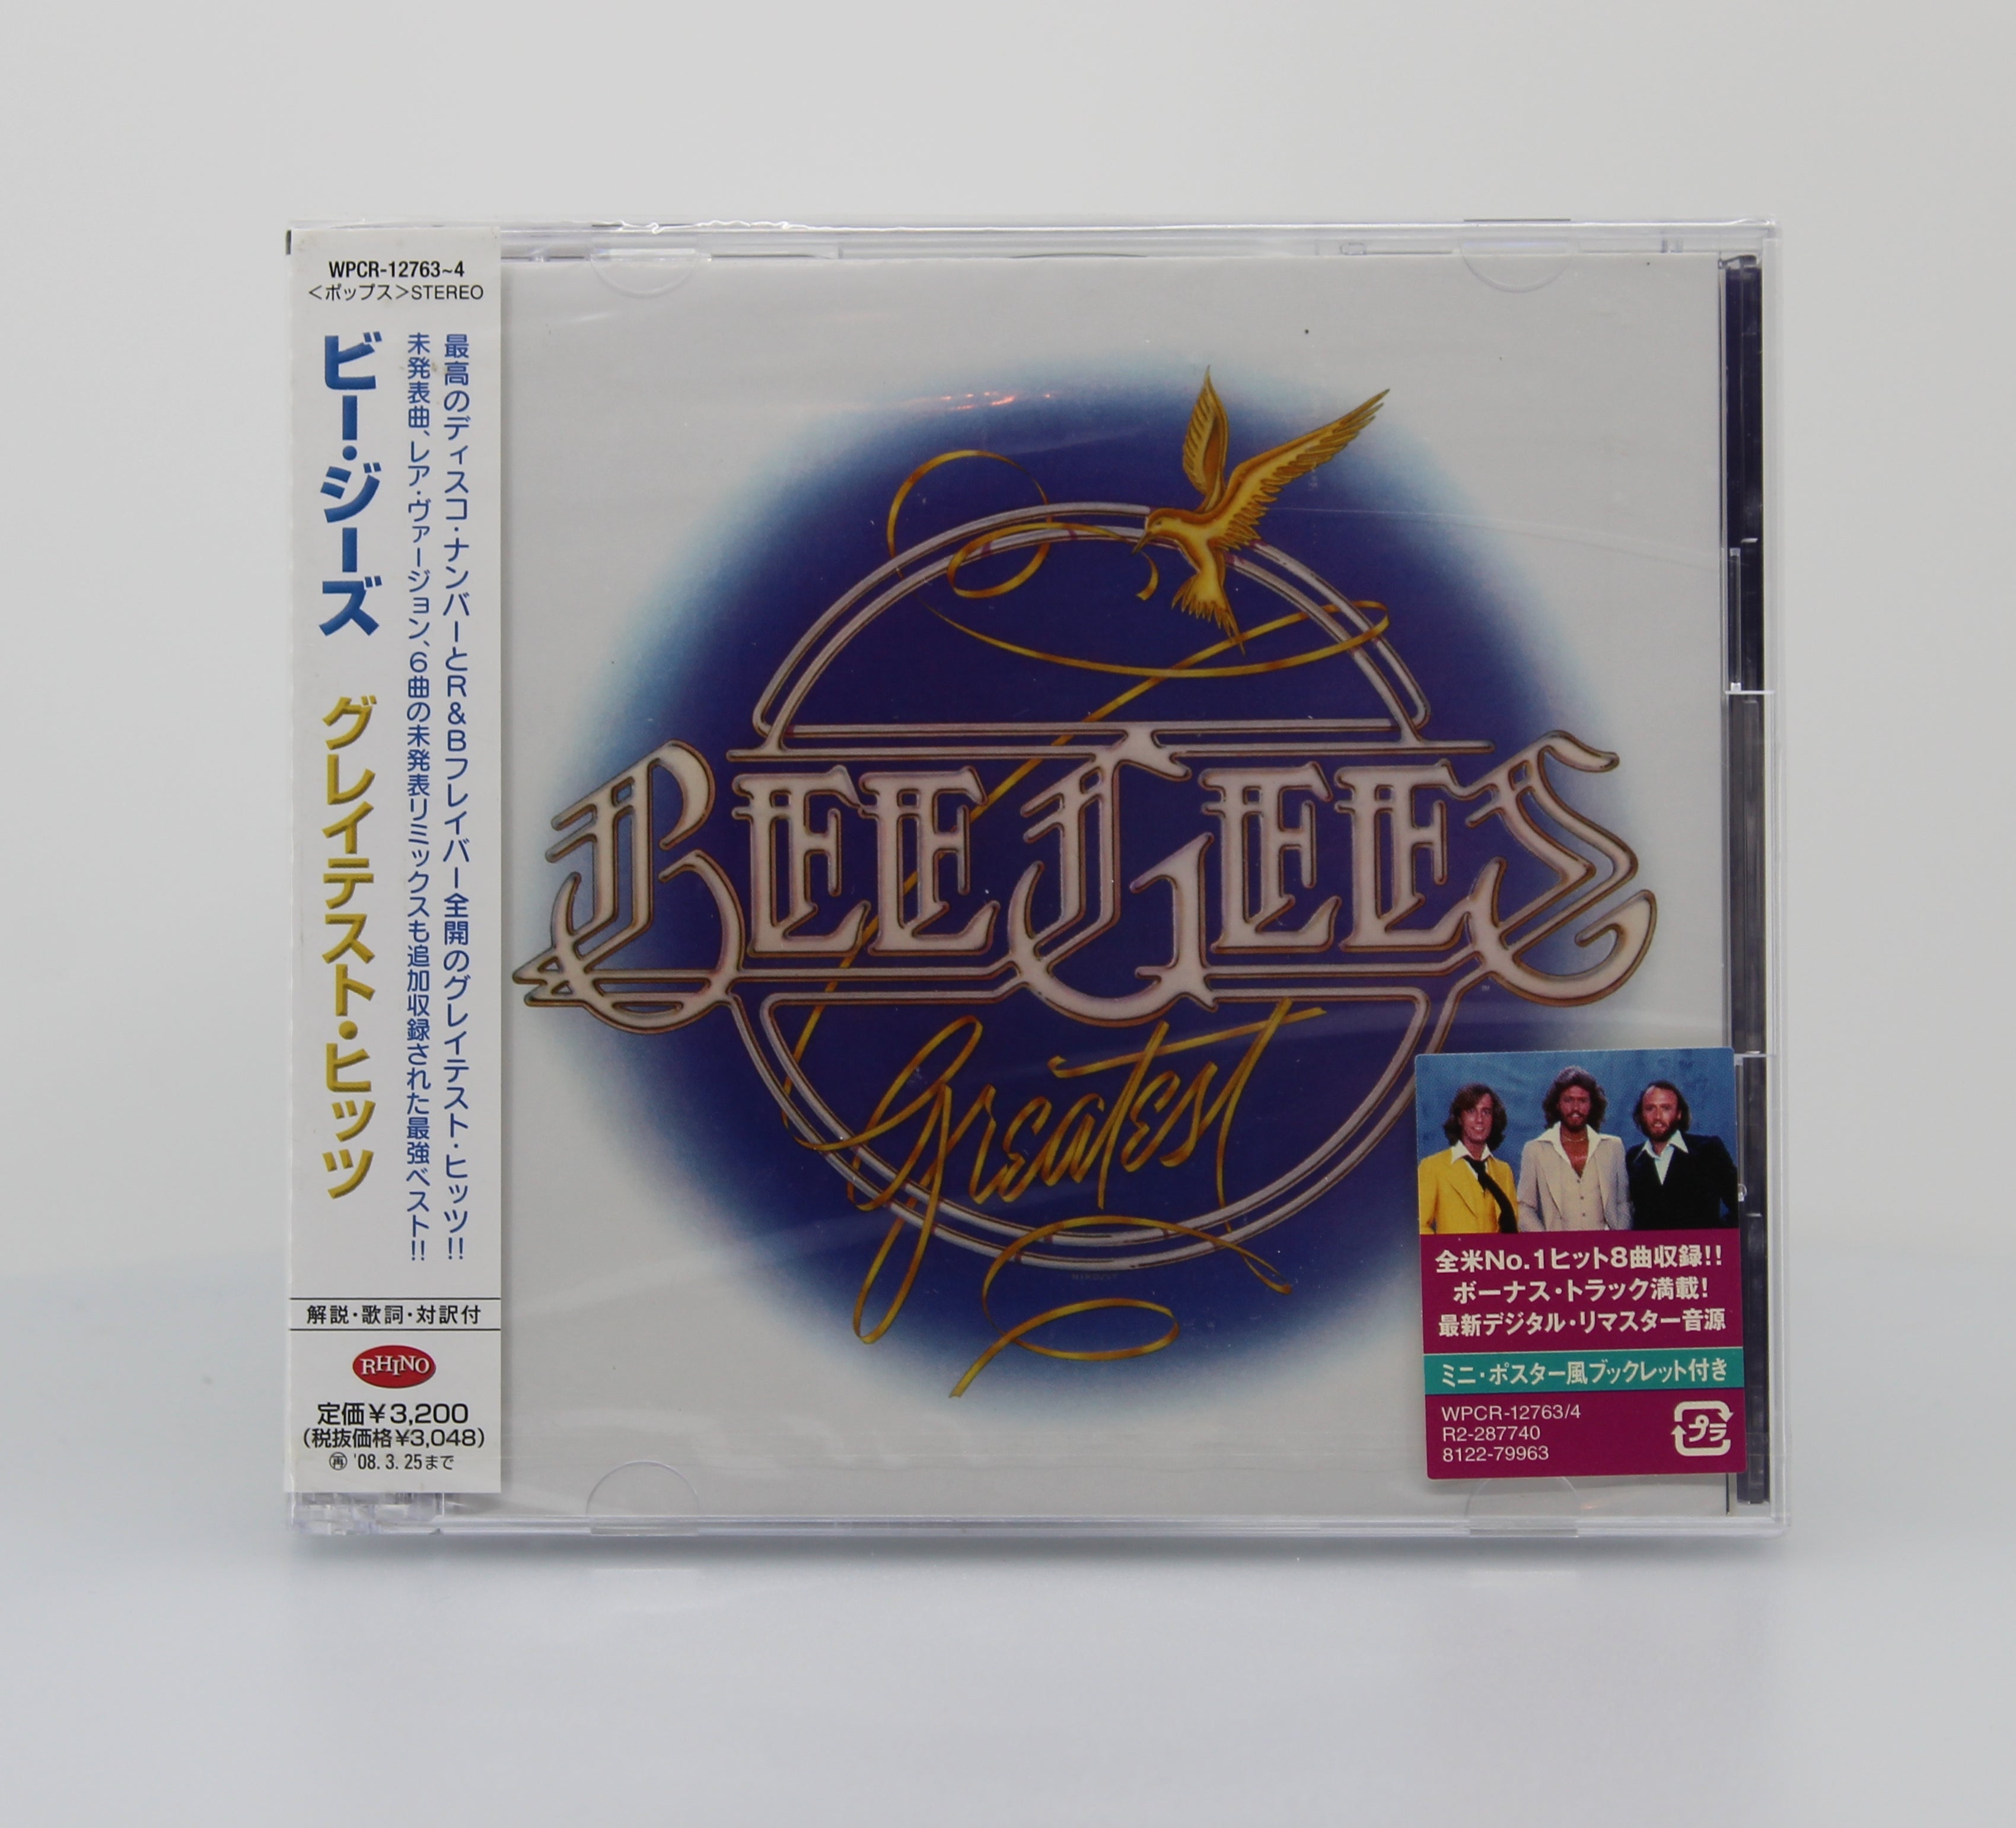 Bee Gees u003d ビー・ジーズ* – Greatest u003d グレイテスト・ヒッツ